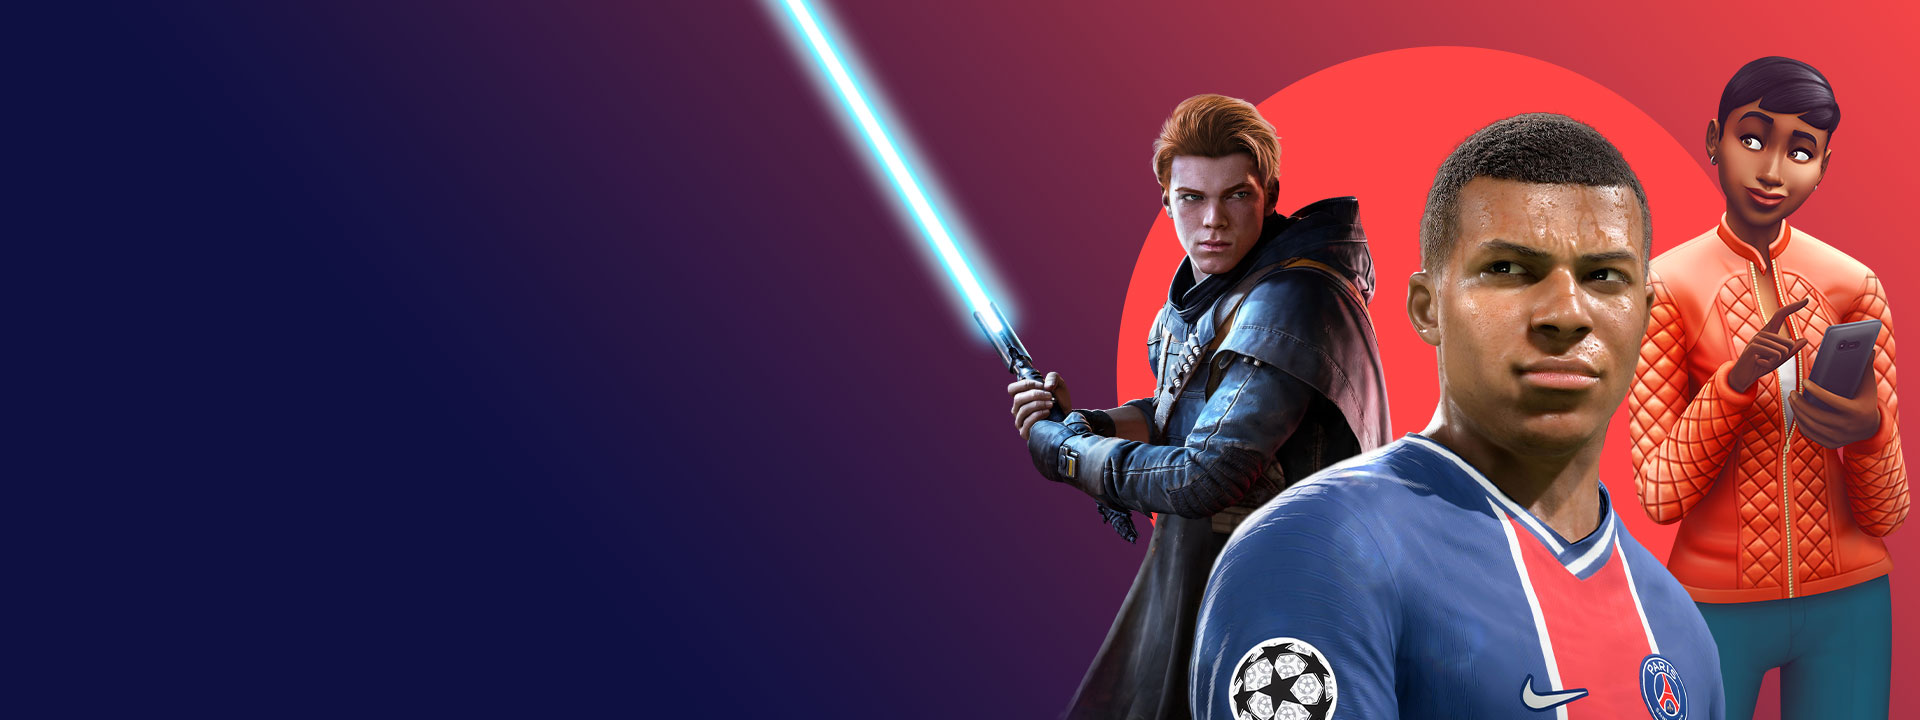 『Star Wars Jedi: Fallen Order』、『FIFA 22』、『The Sims 4』など、Xbox Game Pass に含まれる EA ゲームのアートワーク。